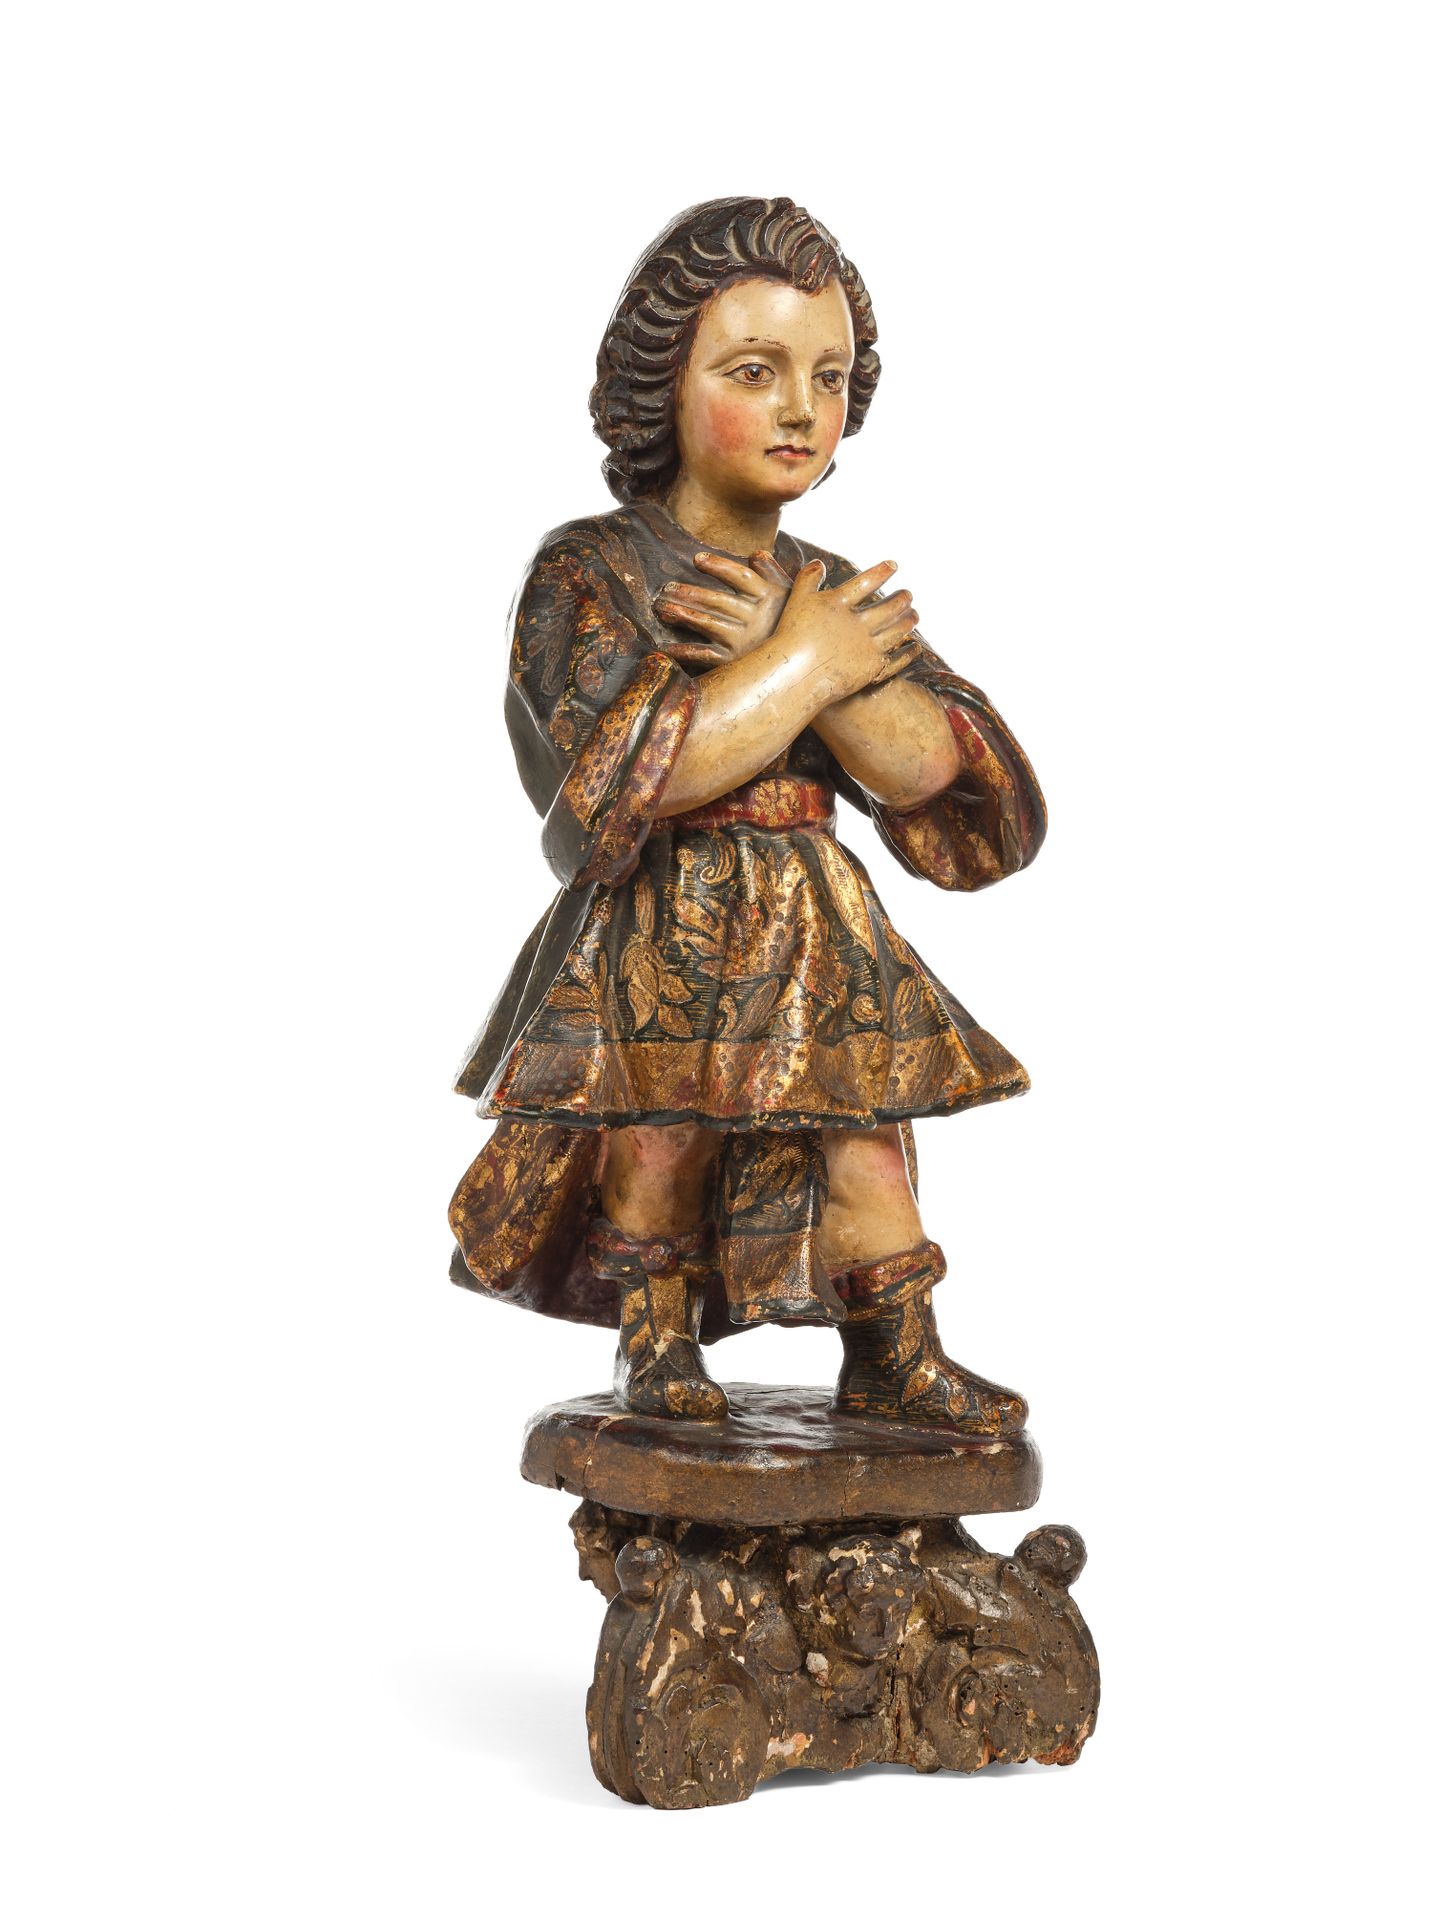 Null 圣天使崇拜者，木雕和彩绘，手臂交叉在胸前，南美洲，18世纪，在一个雕刻的三脚架底座上。
高度：42厘米
(翅膀丢失)